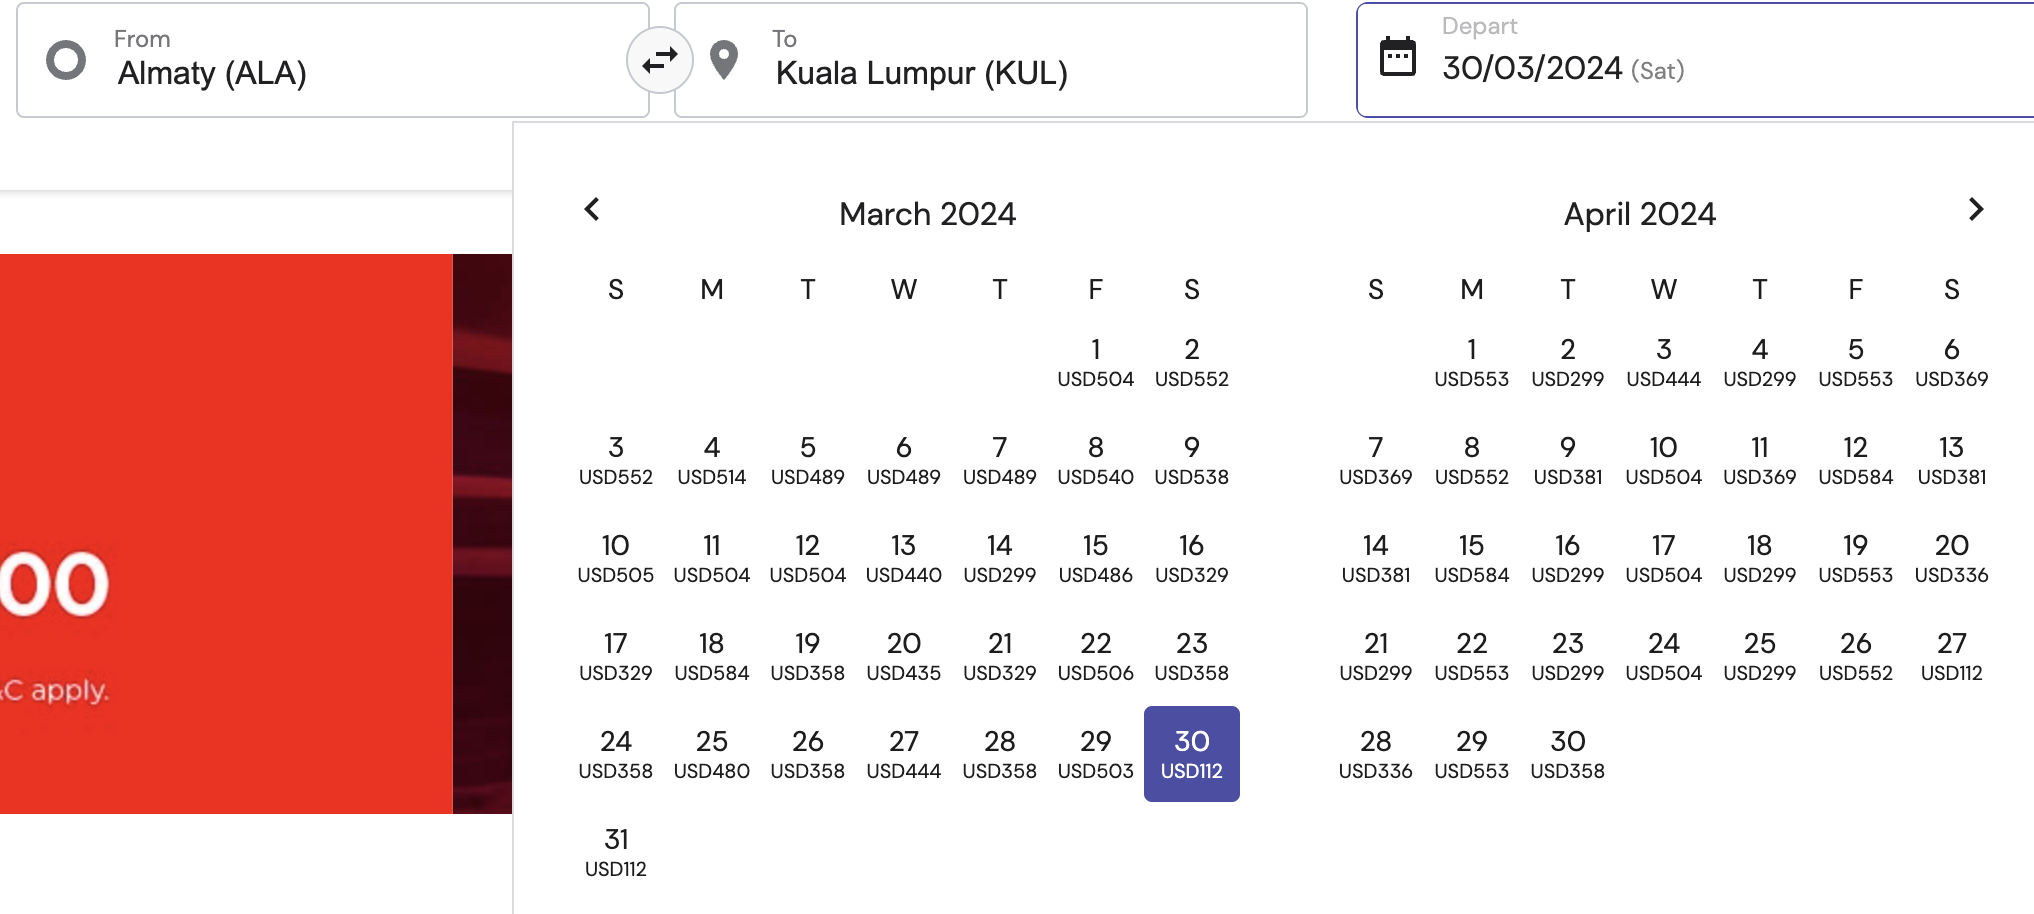 ОООООО!!! Air Asia точно приходит в Казахстан! Билеты из Алматы в Куала-Лумпур в продаже (пока или уже) дорогие, но скоро распродажи